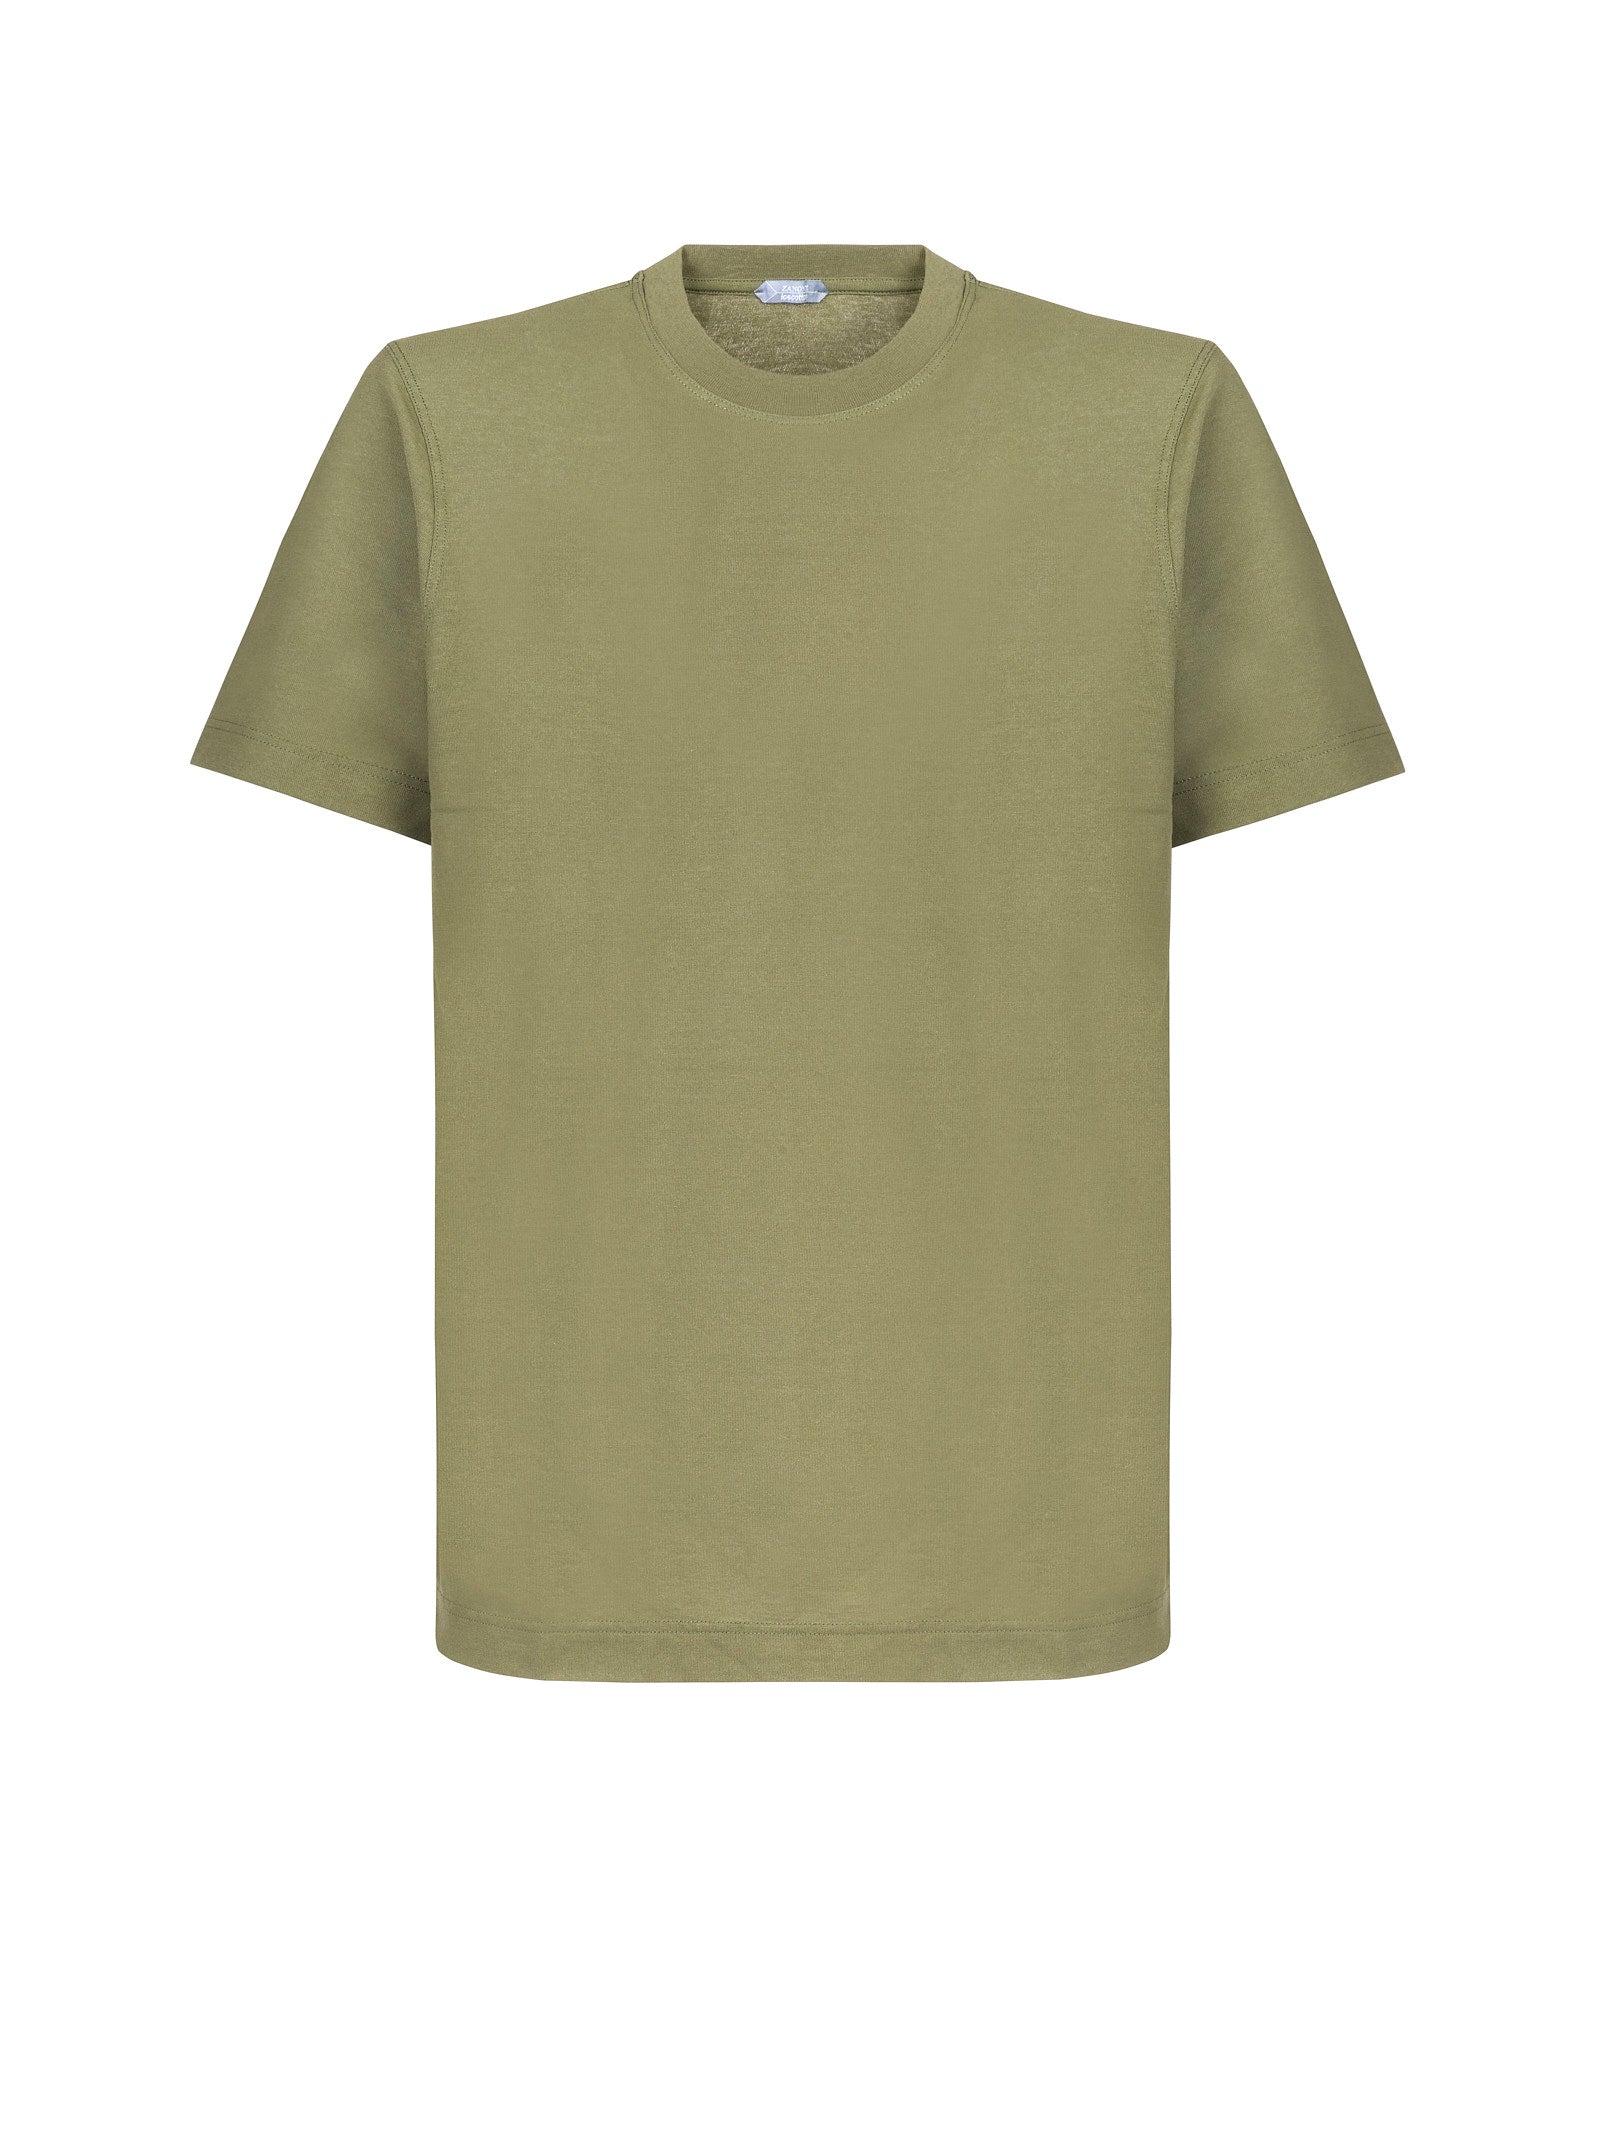 T-shirt ZANONE
Verde